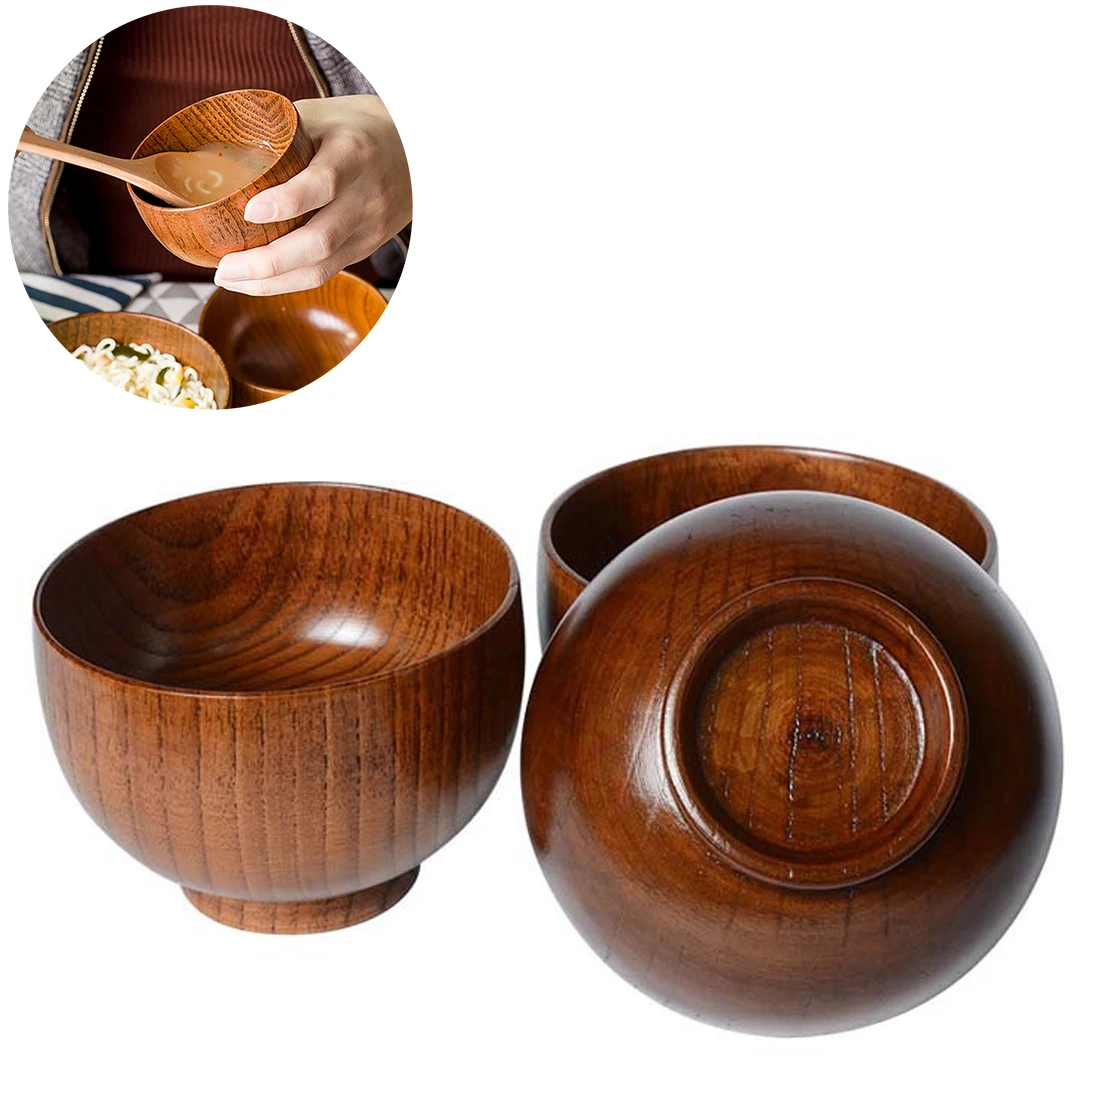 Бытовой Японский стиль деревянная чаша суп/салат рисовая лапша чаши из натурального дерева едят чашу для детей посуда